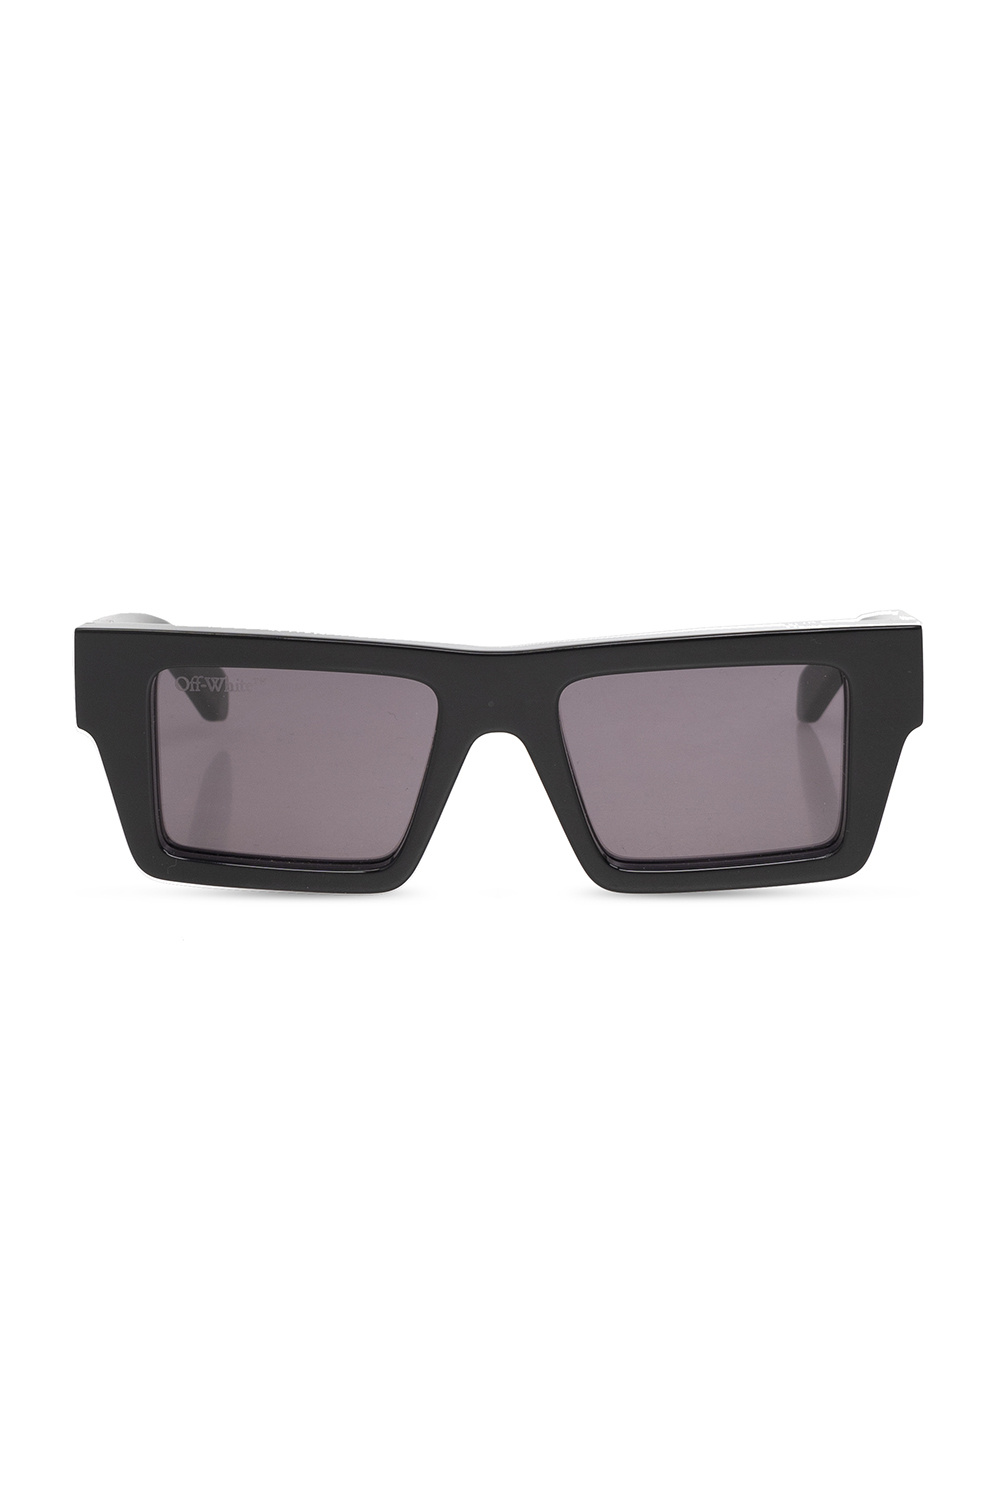 Off - Men's Accessorie, White 'Nassau' sunglasses framed -  StclaircomoShops